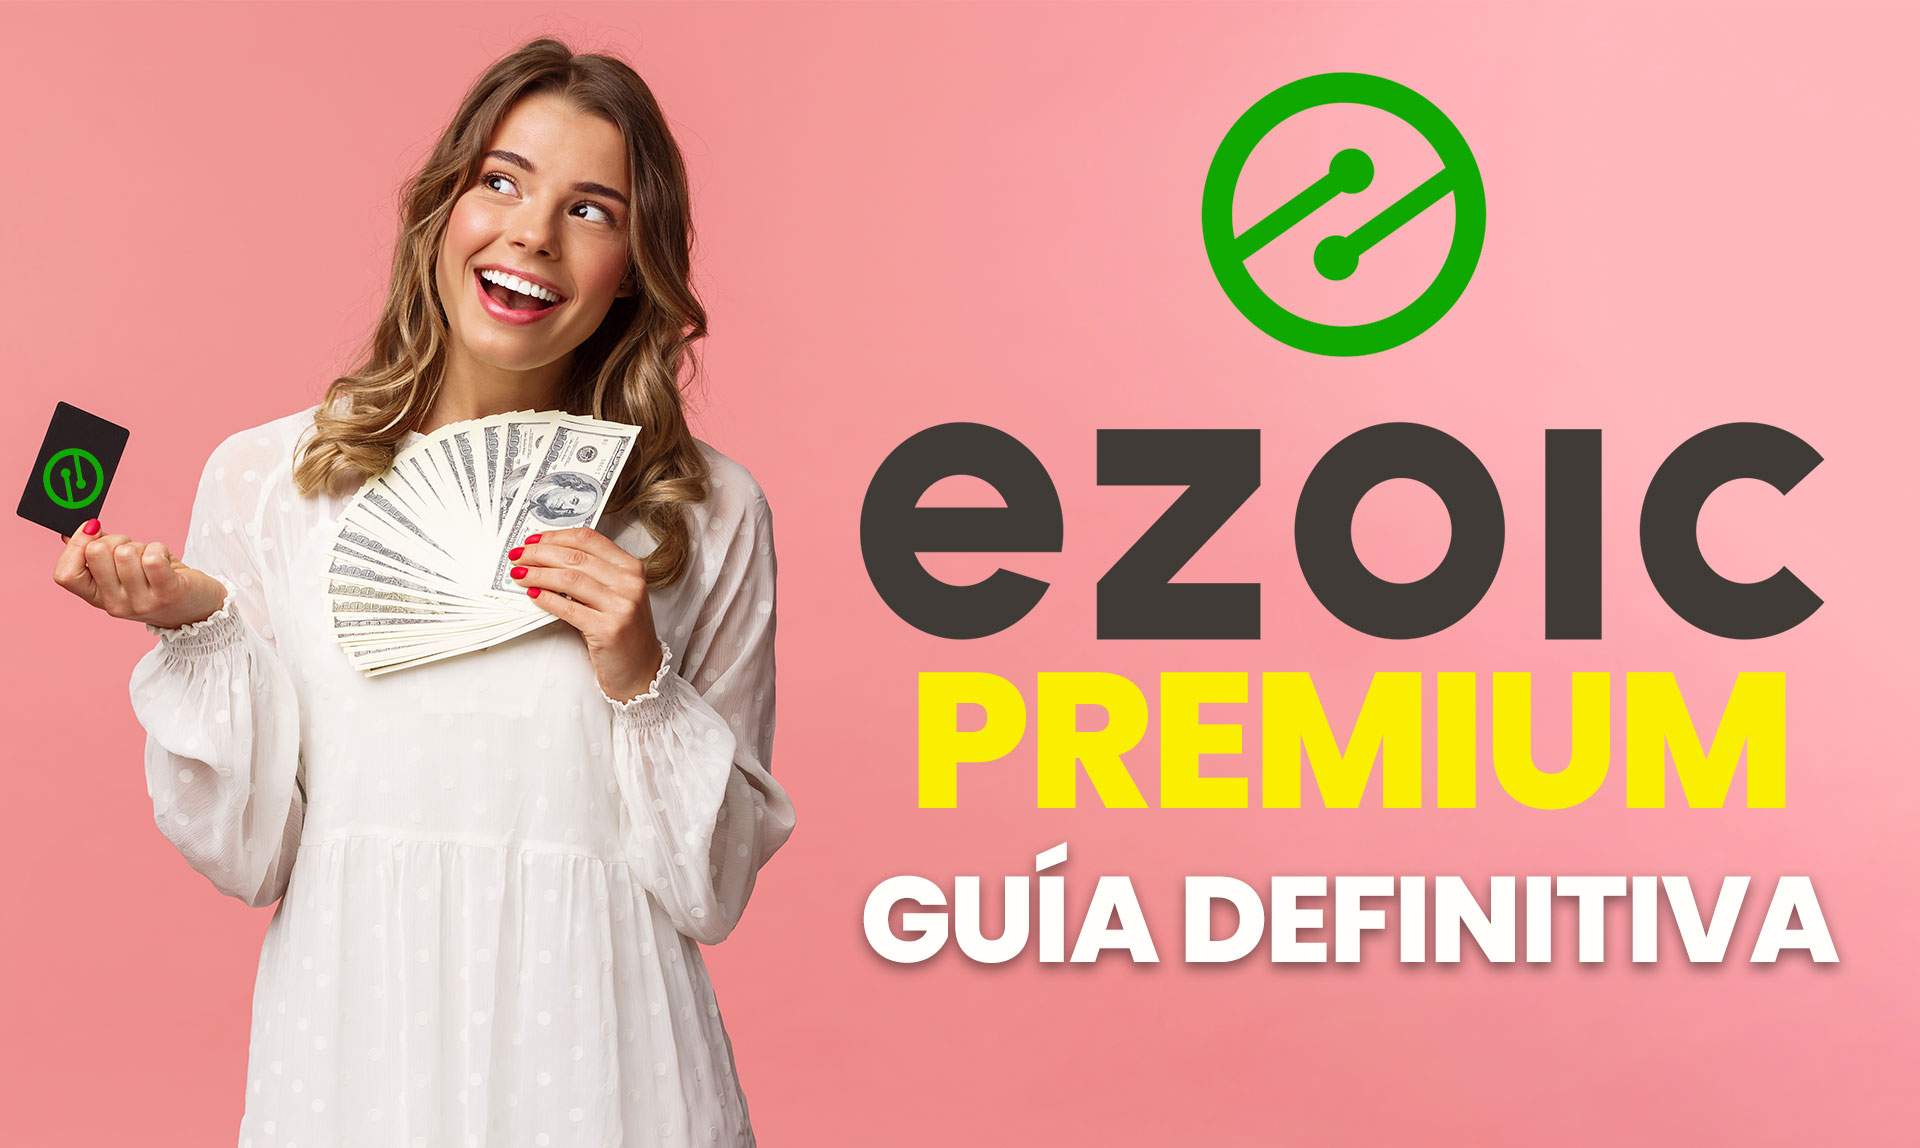 ezoic-premium